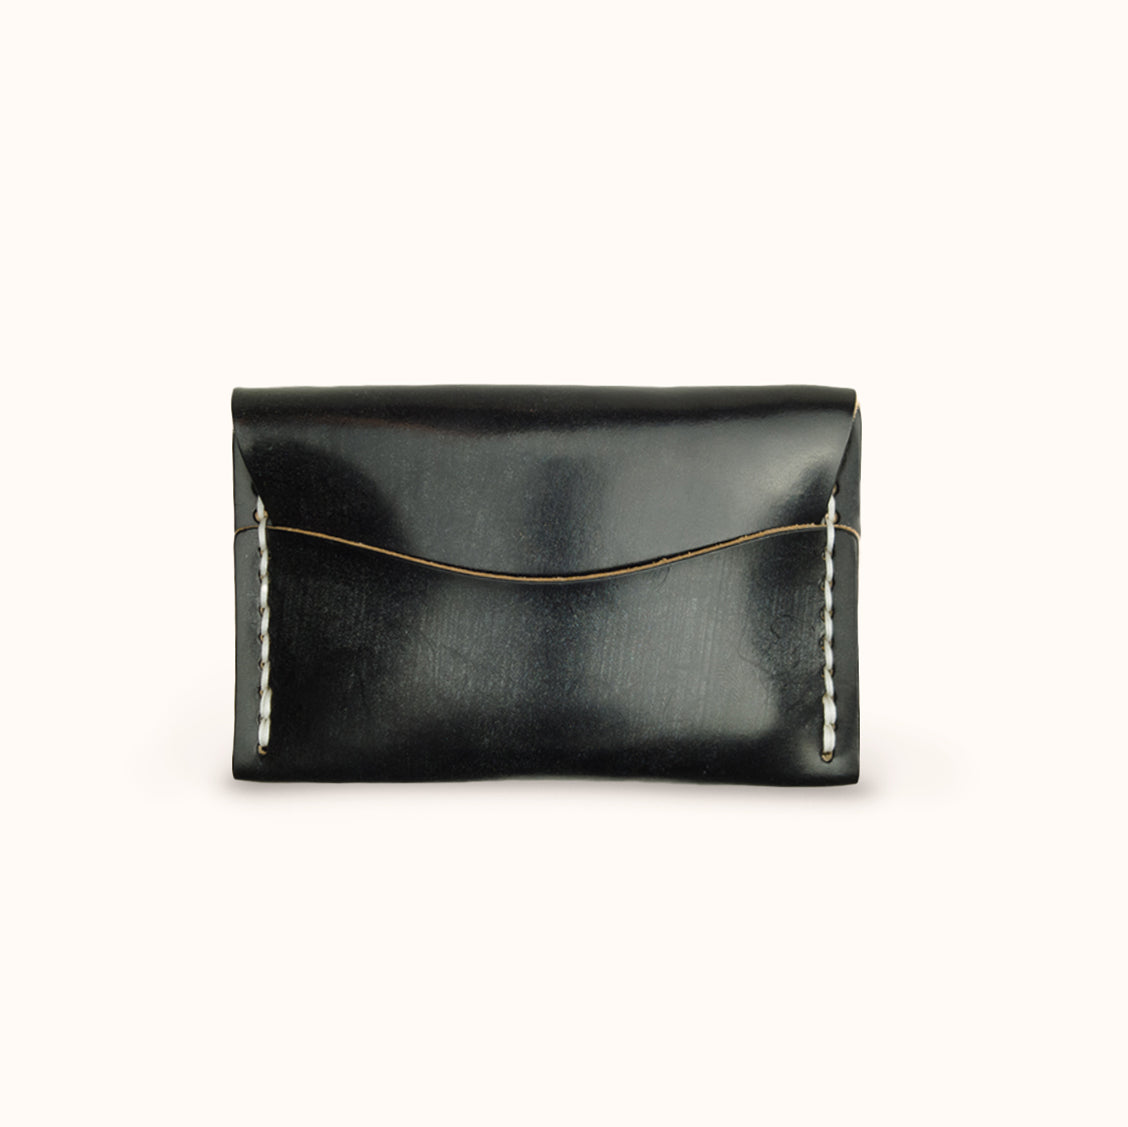 Blue/Black Leather Cardholder Wallet